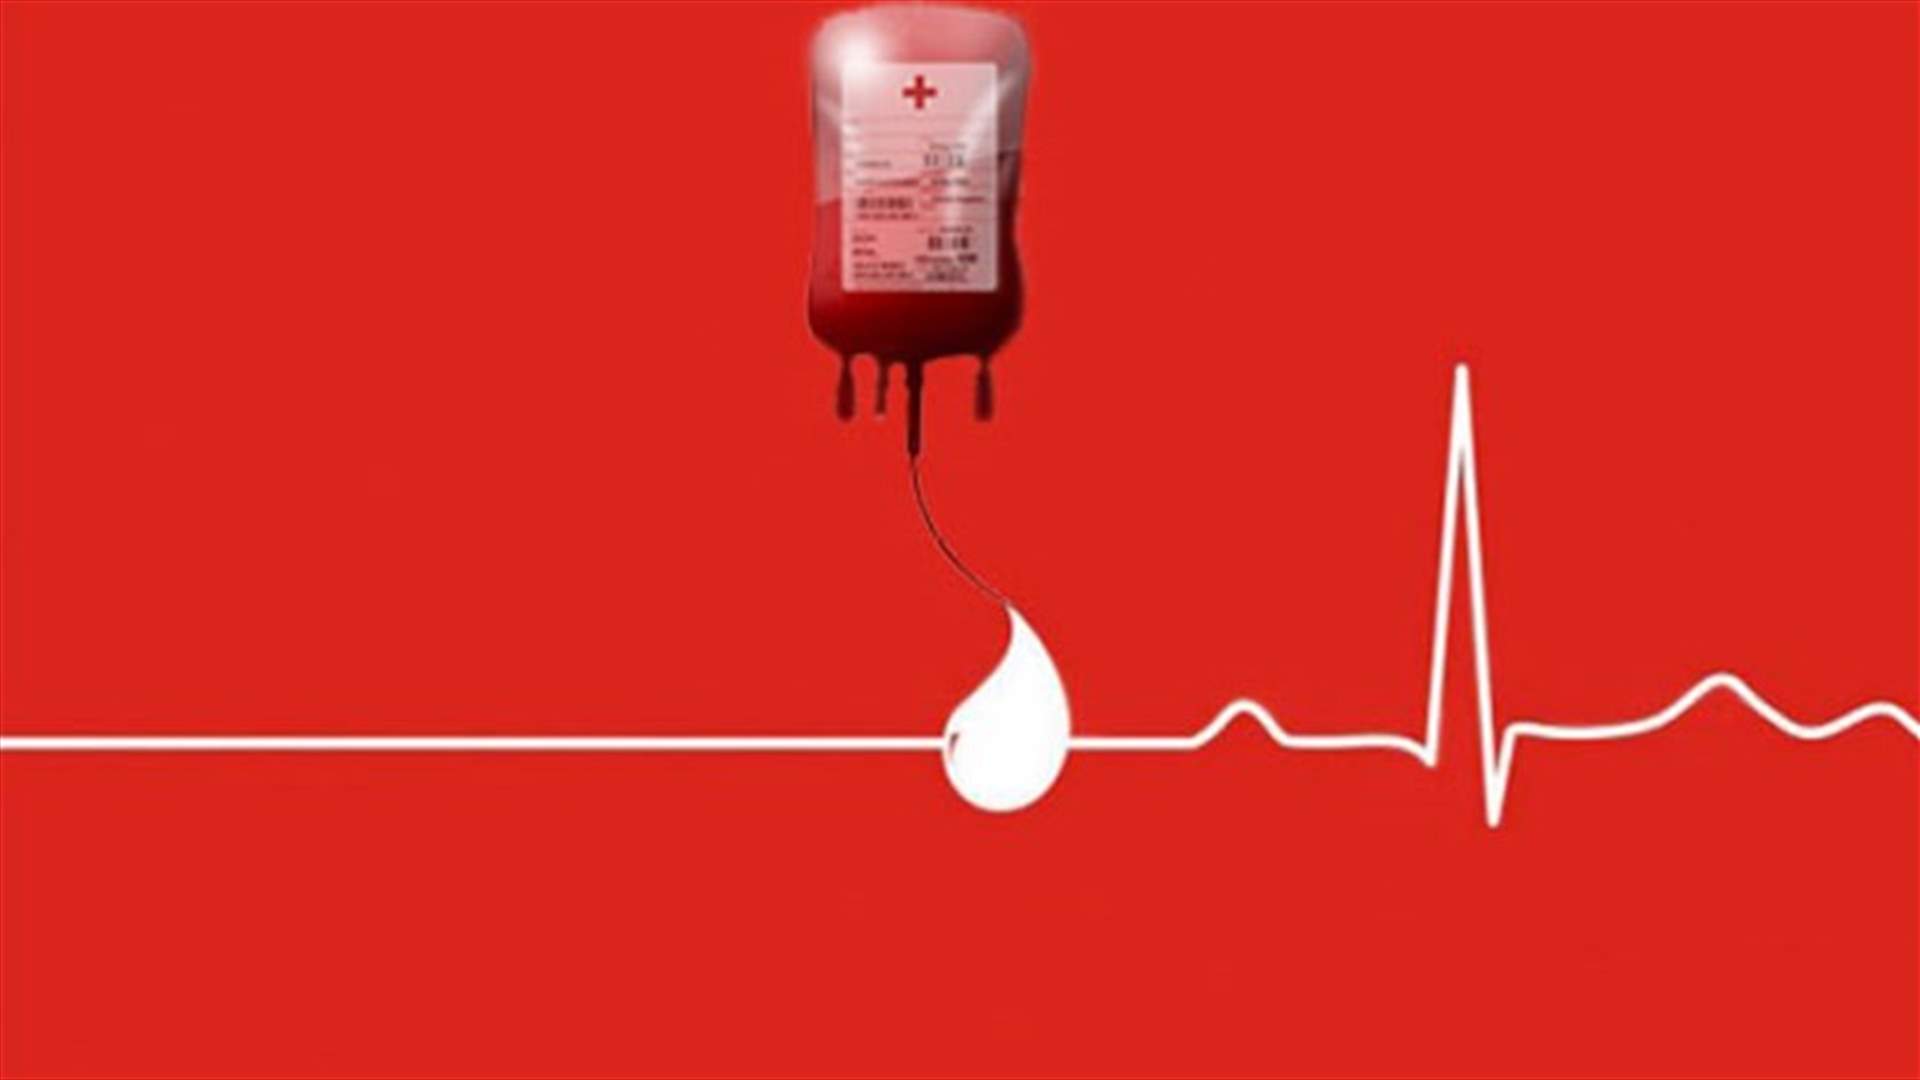 مريض بحاجة ماسة الى وحدات دم من فئة O- في مستشفى اوتيل ديو... للتبرع الرجاء الاتصال على الرقم التالي: 03698594